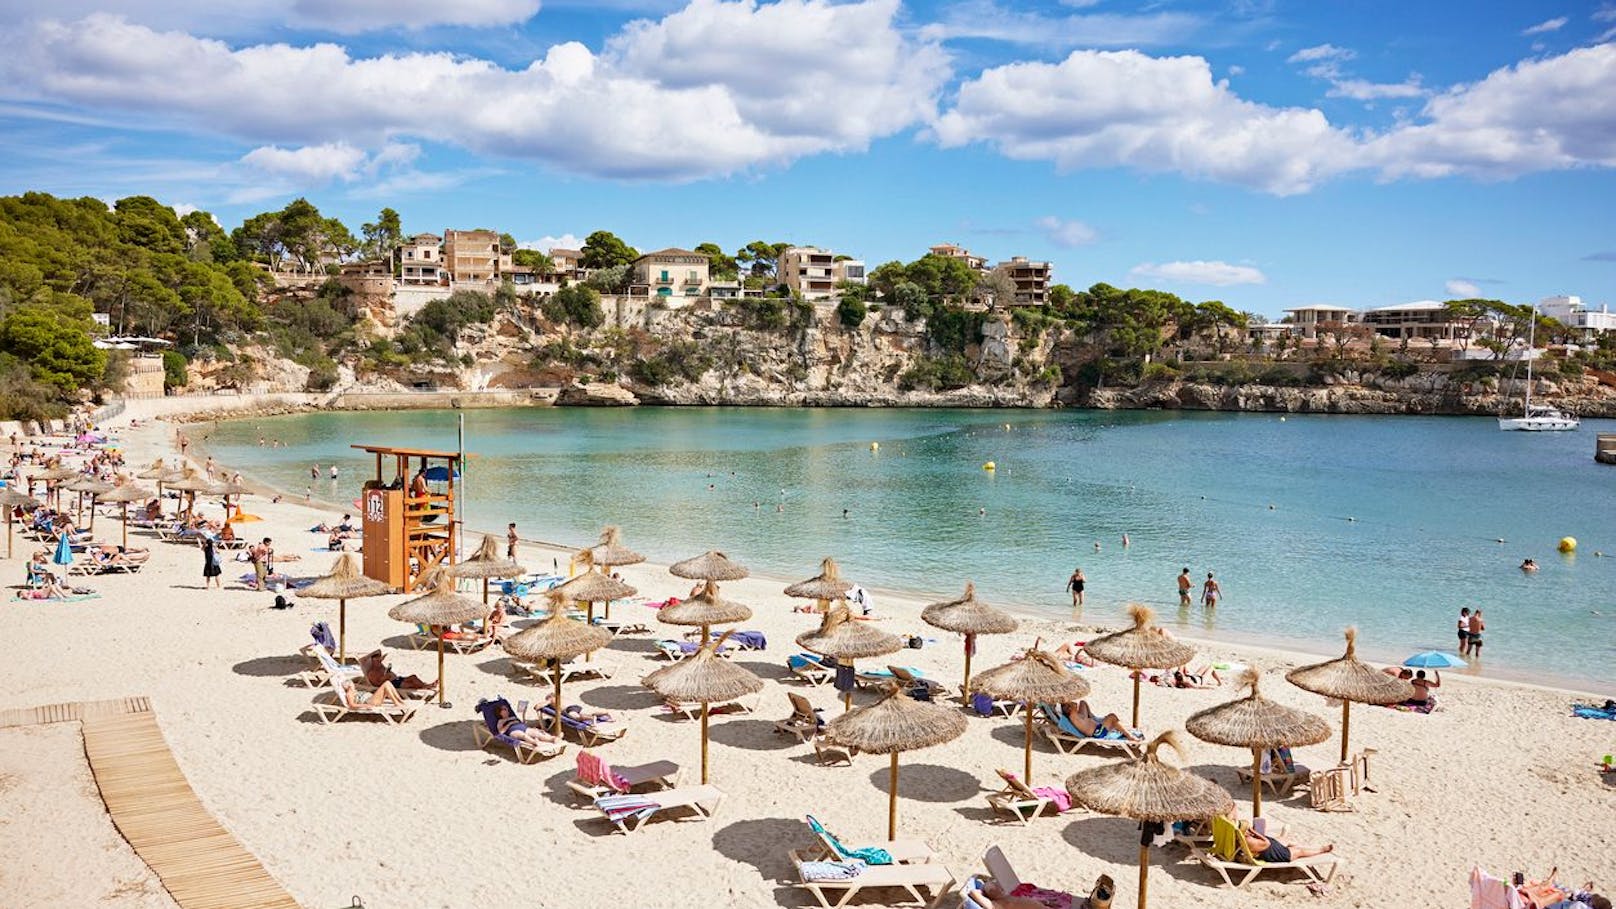 Auf Platz 3 der Lieblingsziele befindet sich eine Balearen-Insel: "<strong>Mallorca</strong> verzeichnet starke Zuwächse und ringt mit Kreta um den zweiten Platz."